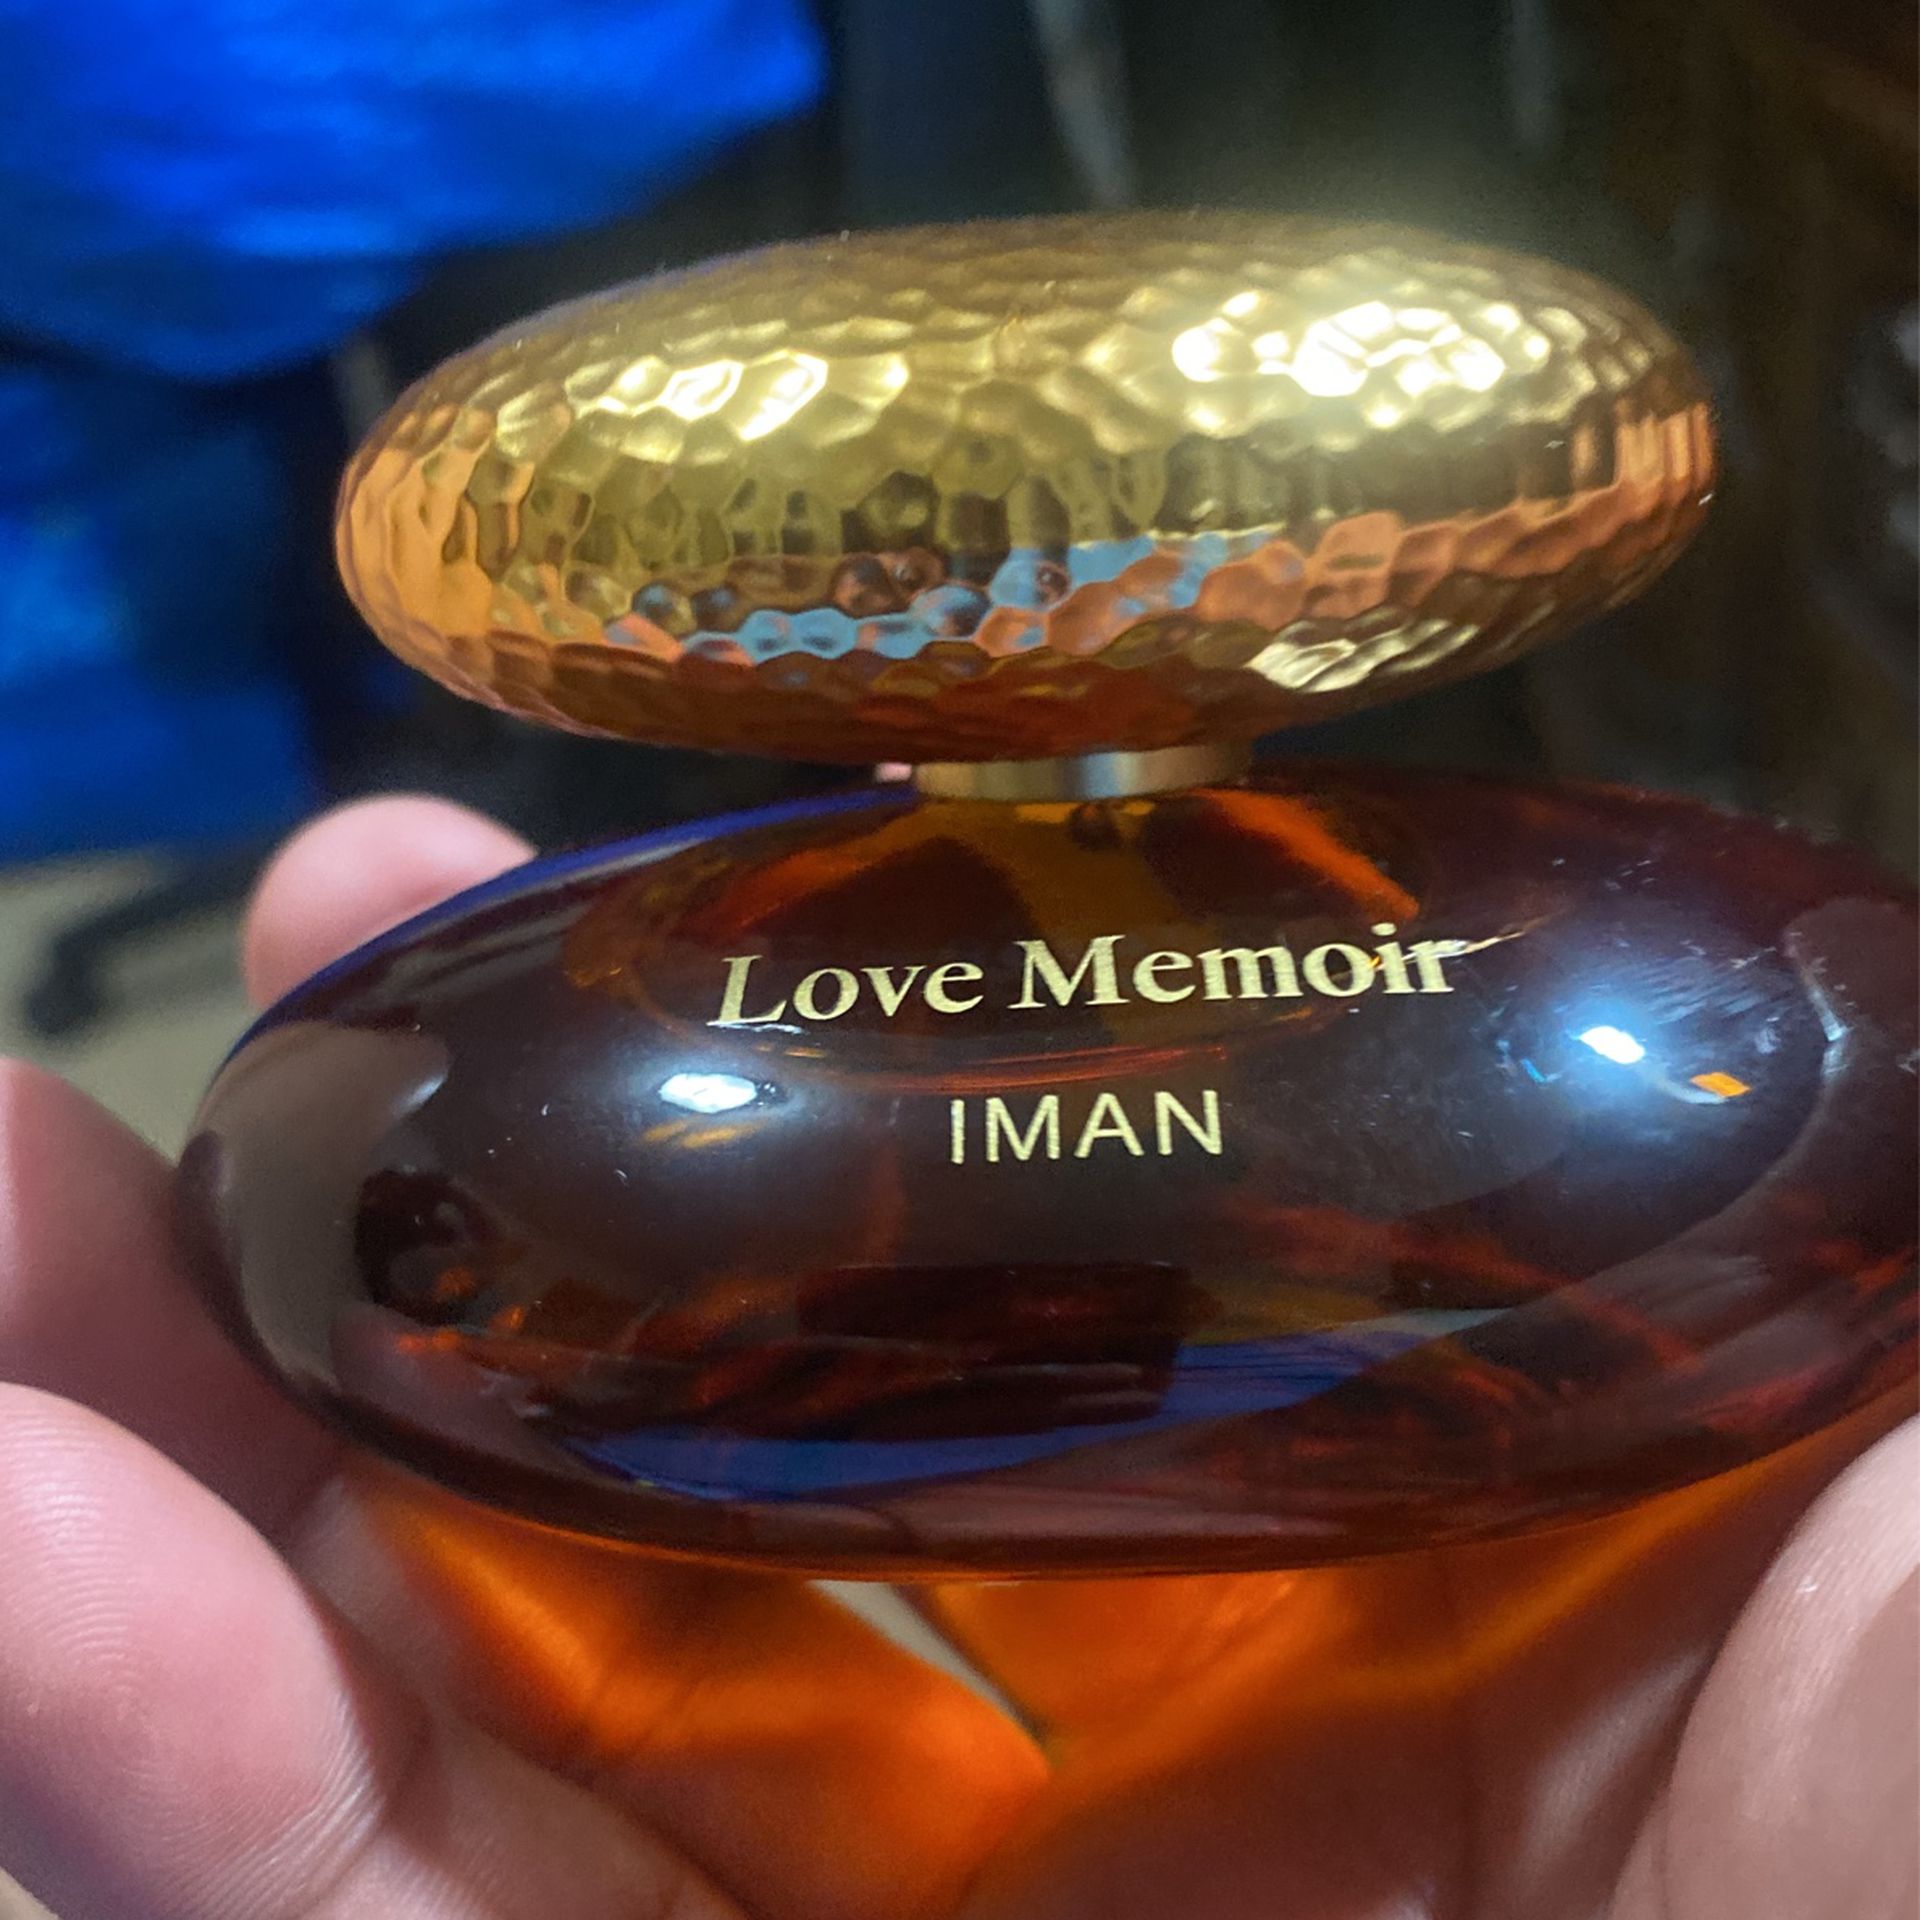 Love Memoir (iman) $50